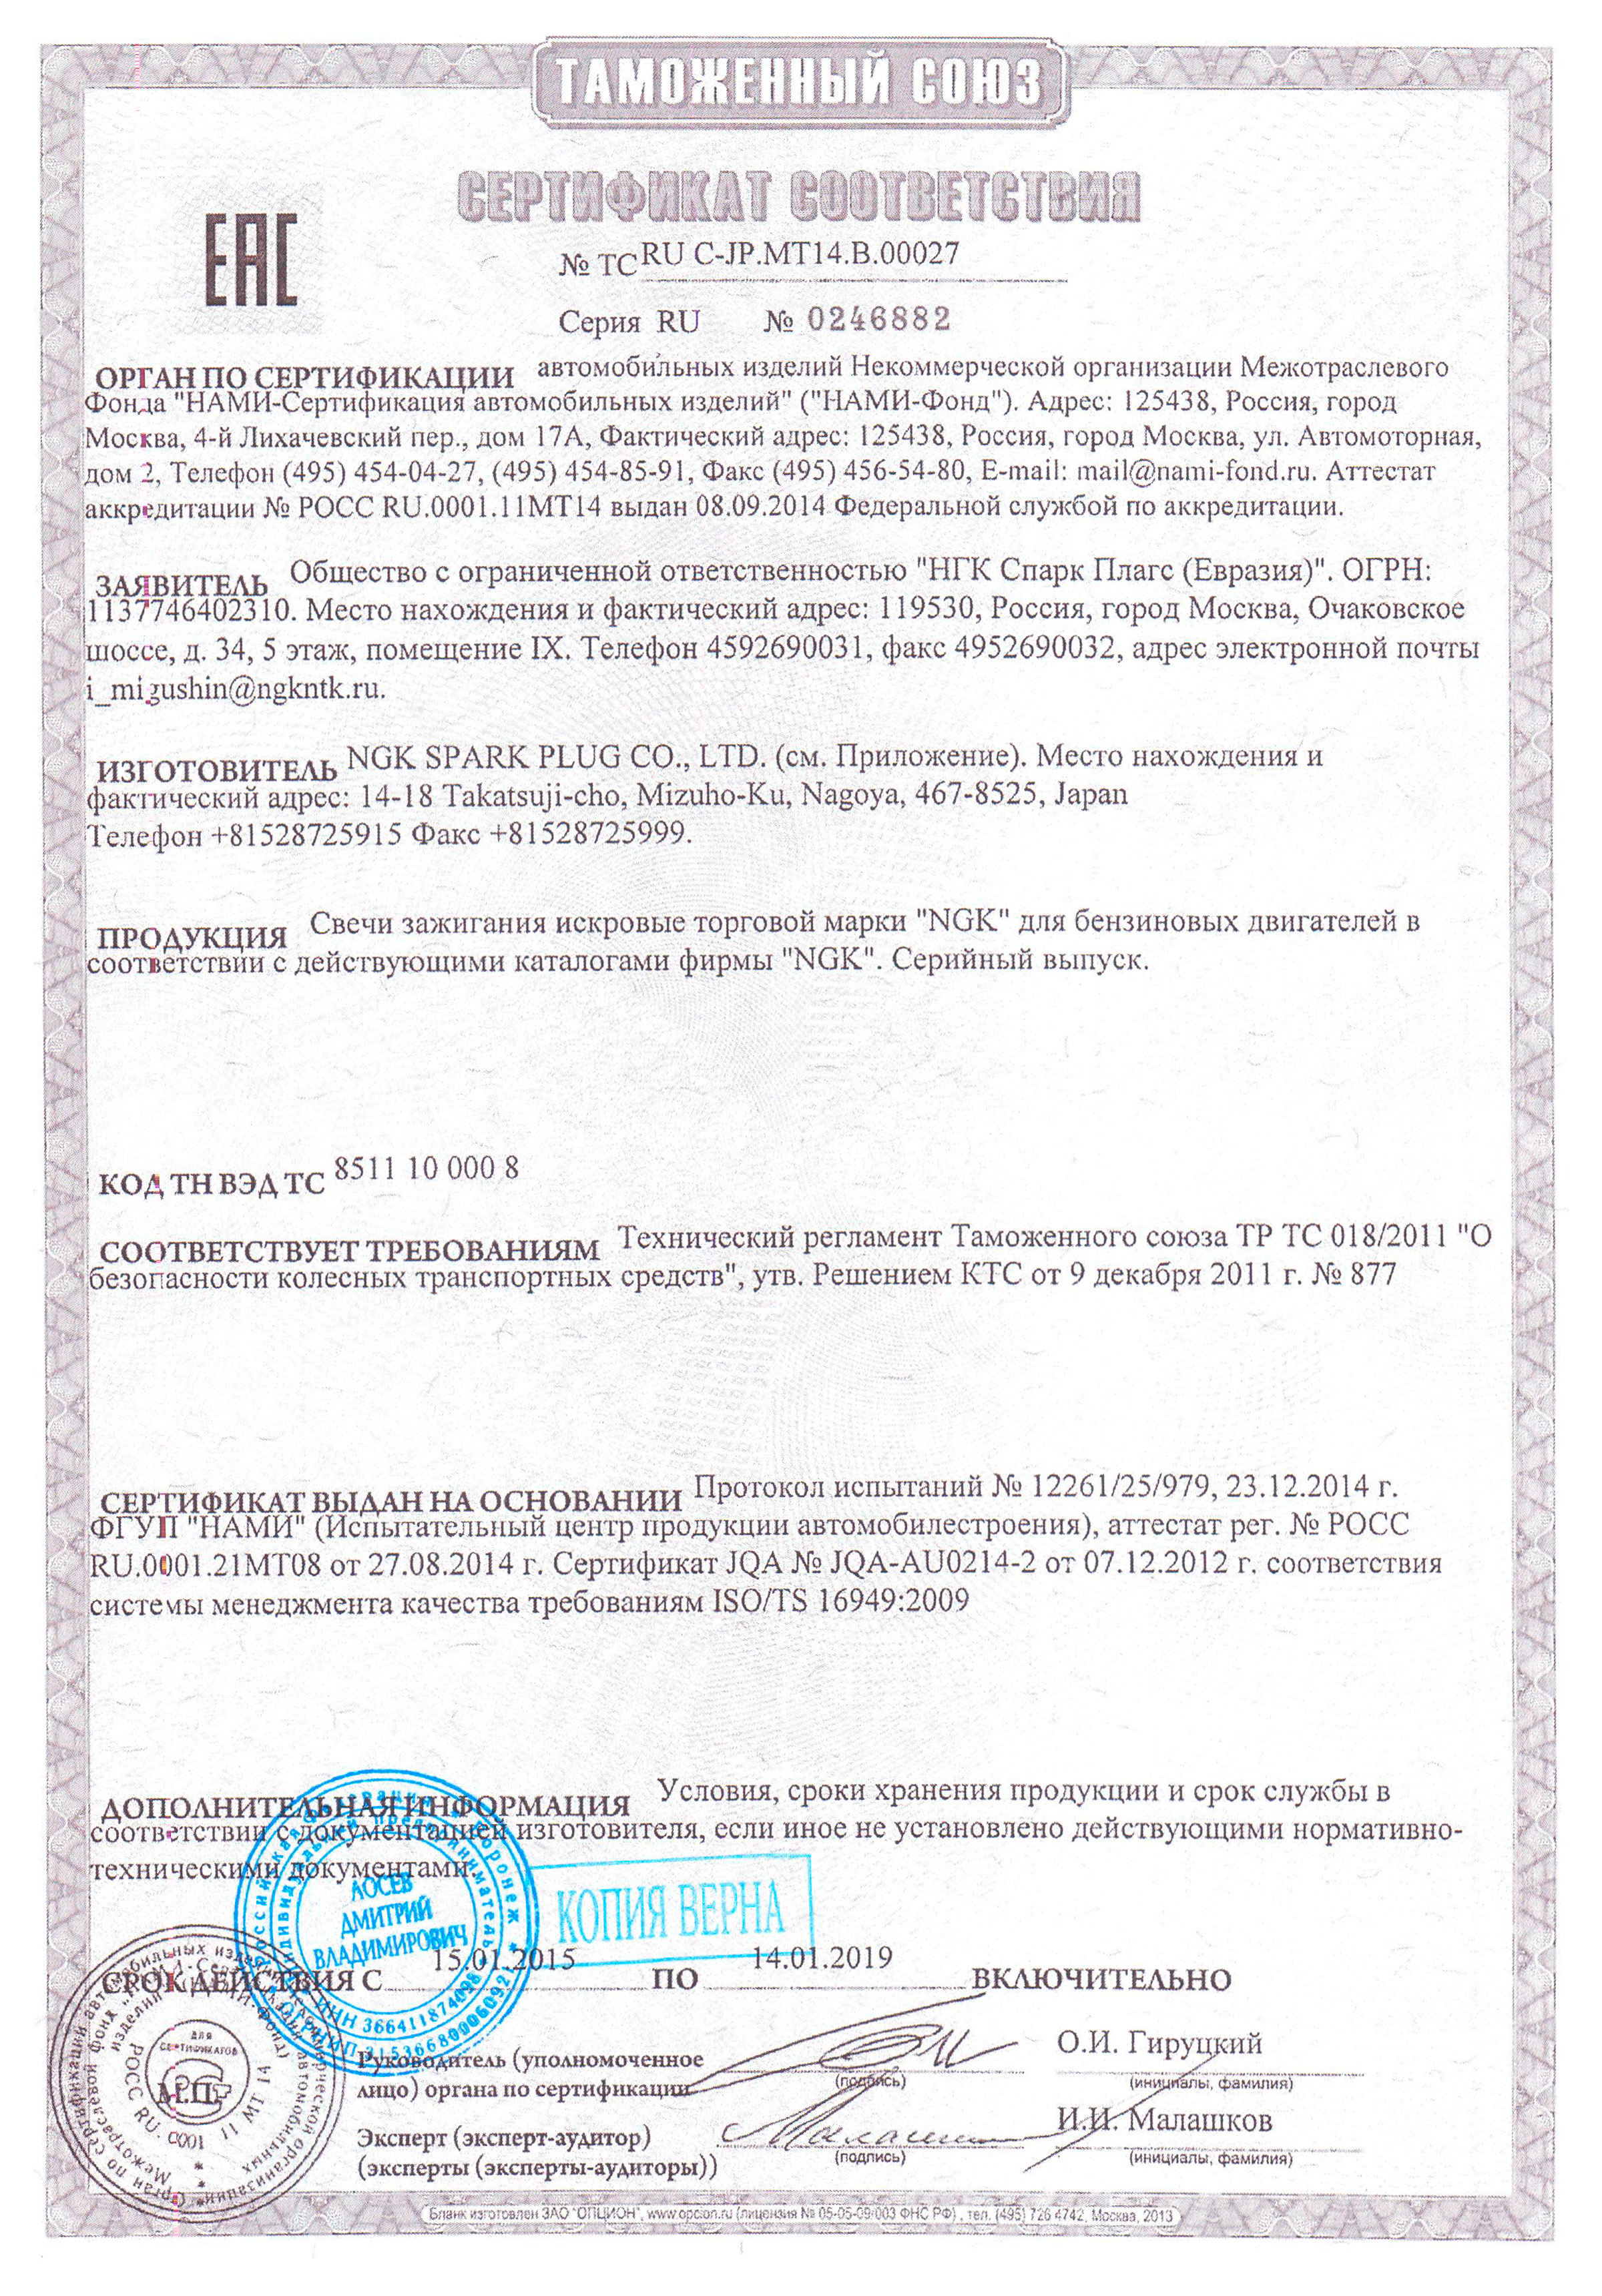 Сертификат соответствия на свечи зажигания NGK